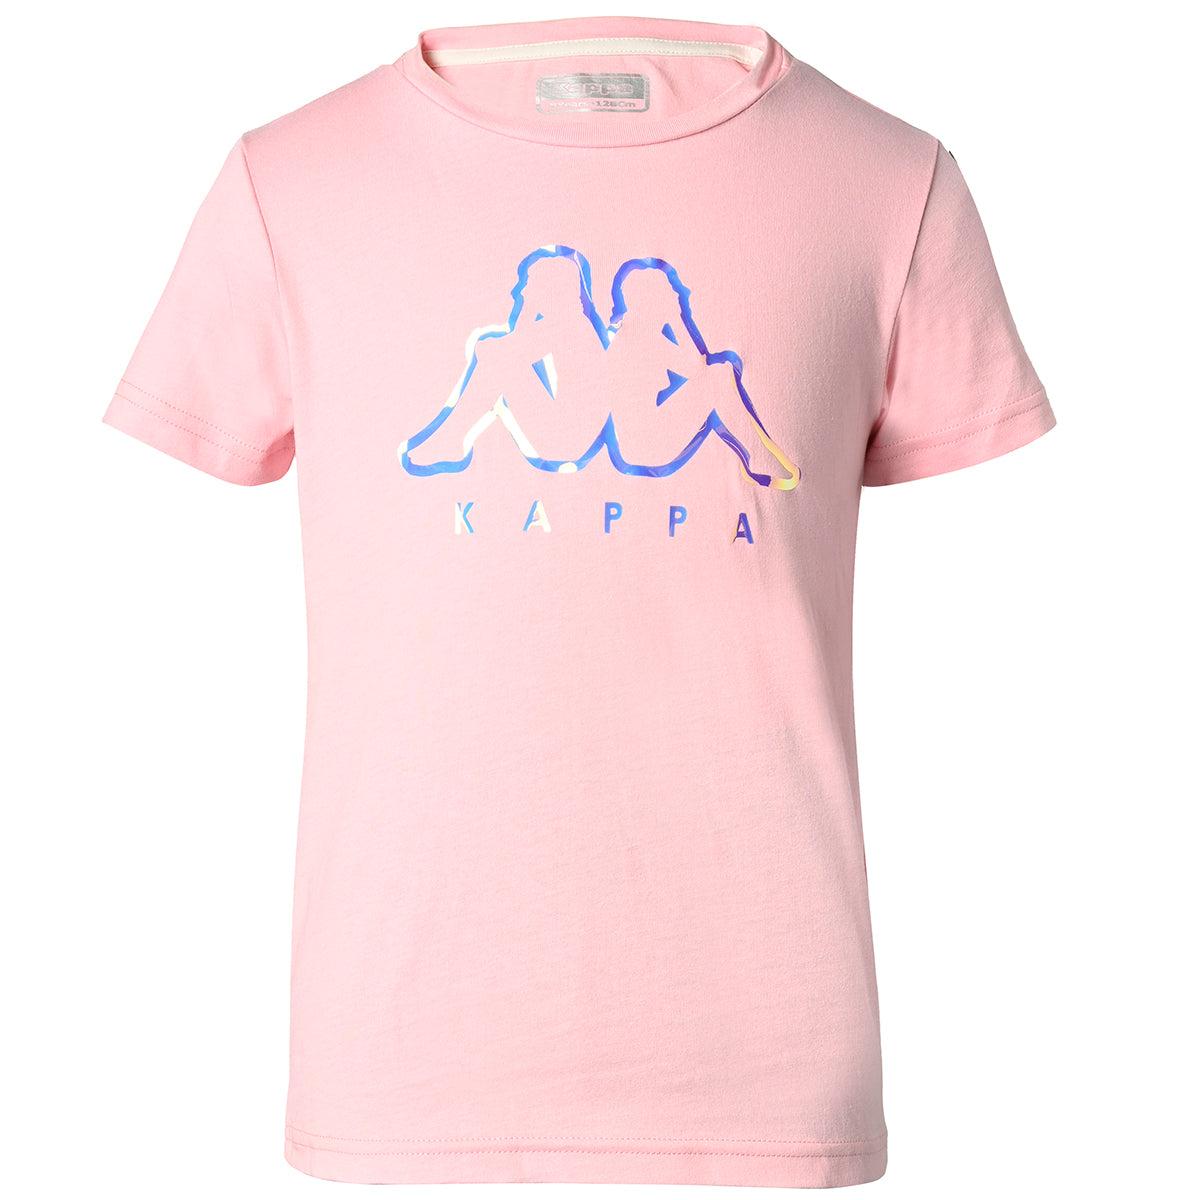 Selected image for KAPPA Majica za devojčice Quissy roze